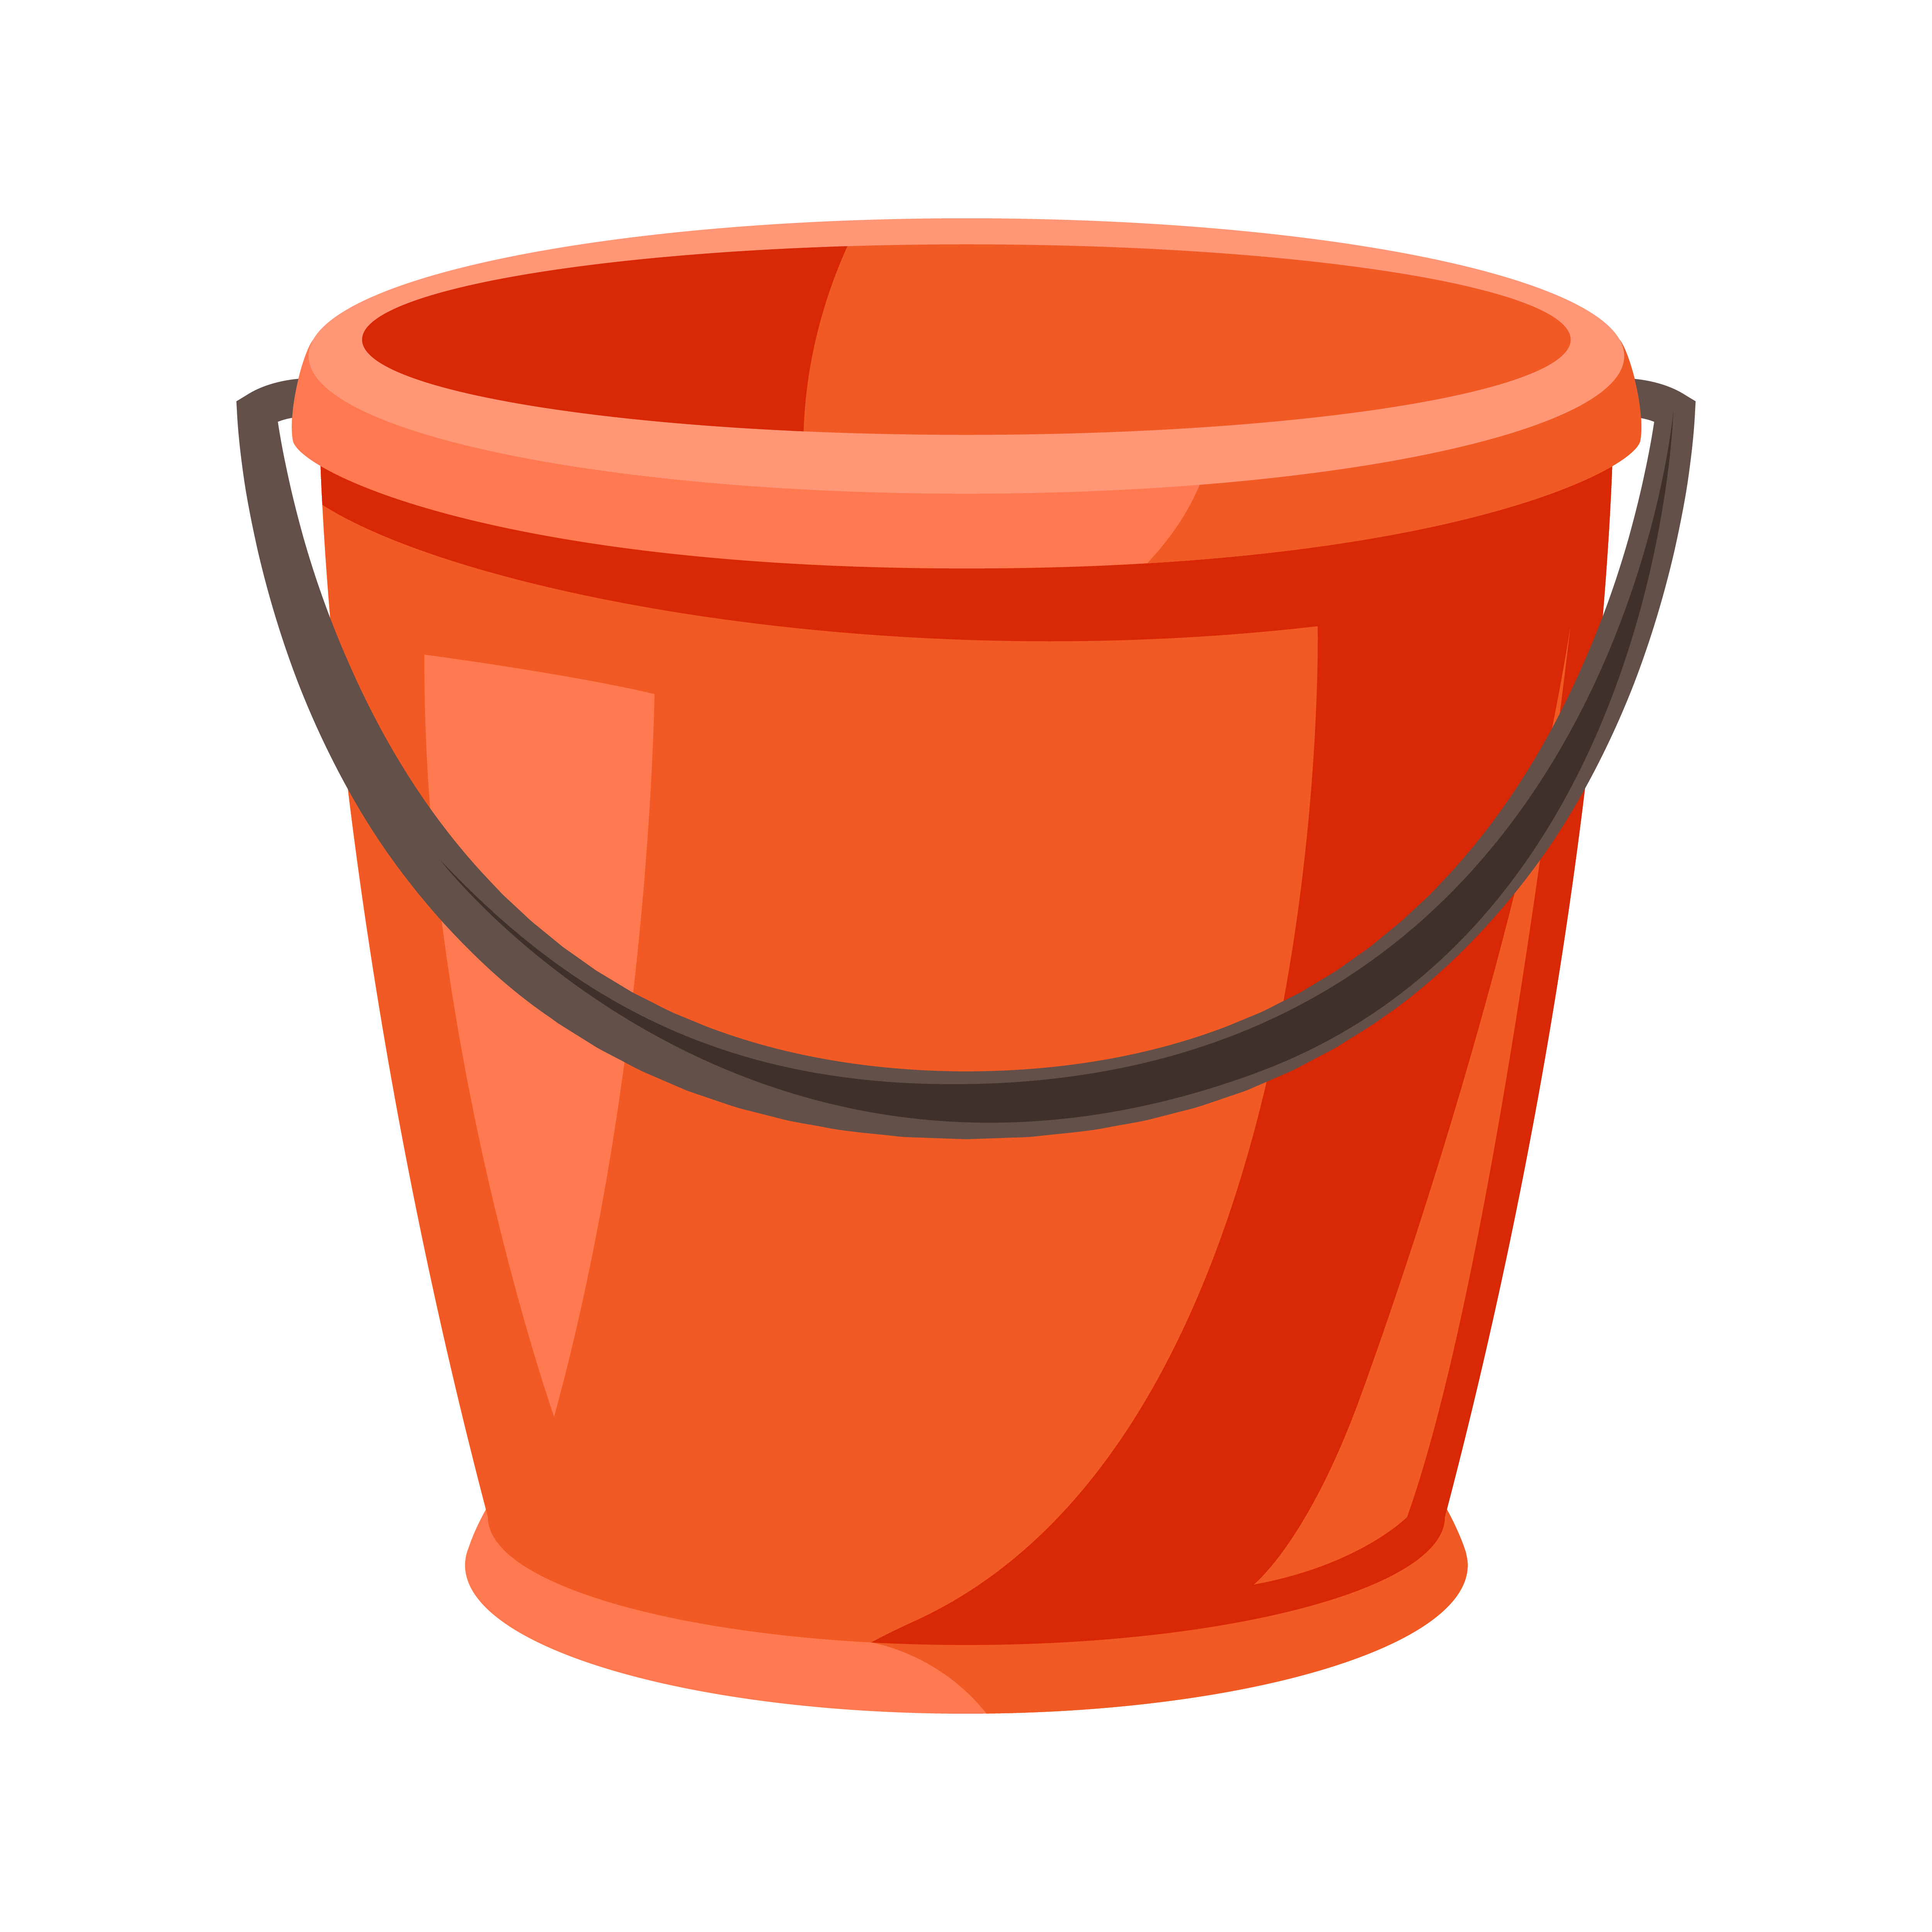 Illustration of garden plastic bucket. Tool for farming and gardening.. Illustration of garden plastic bucket.